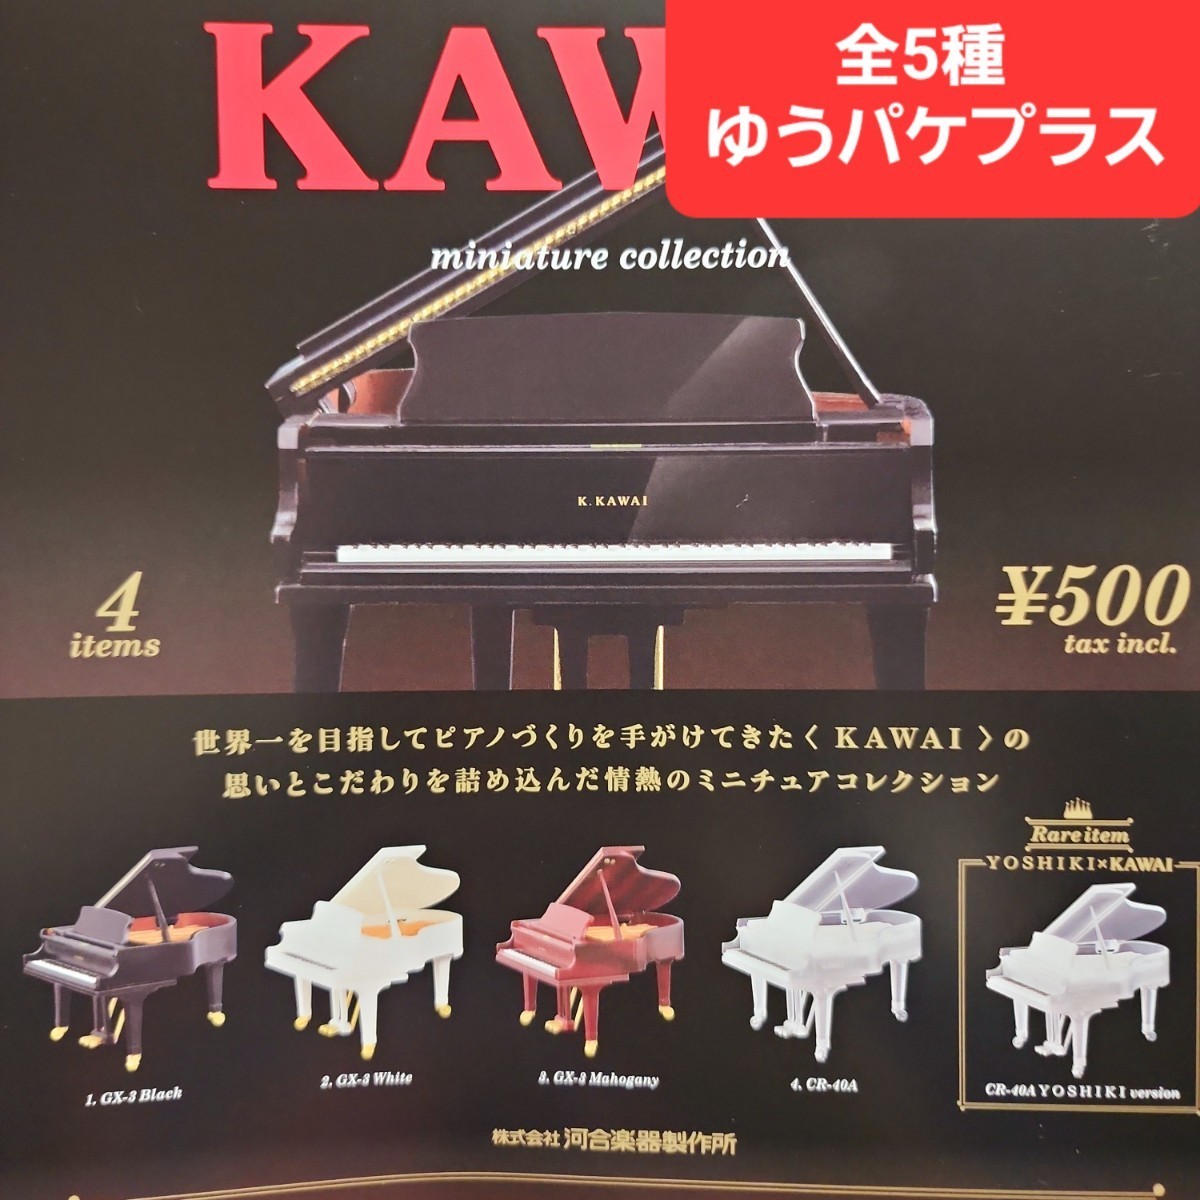 KAWAI ミニチュアコレクション [3.GX-3 Mahogany] - ガチャガチャ